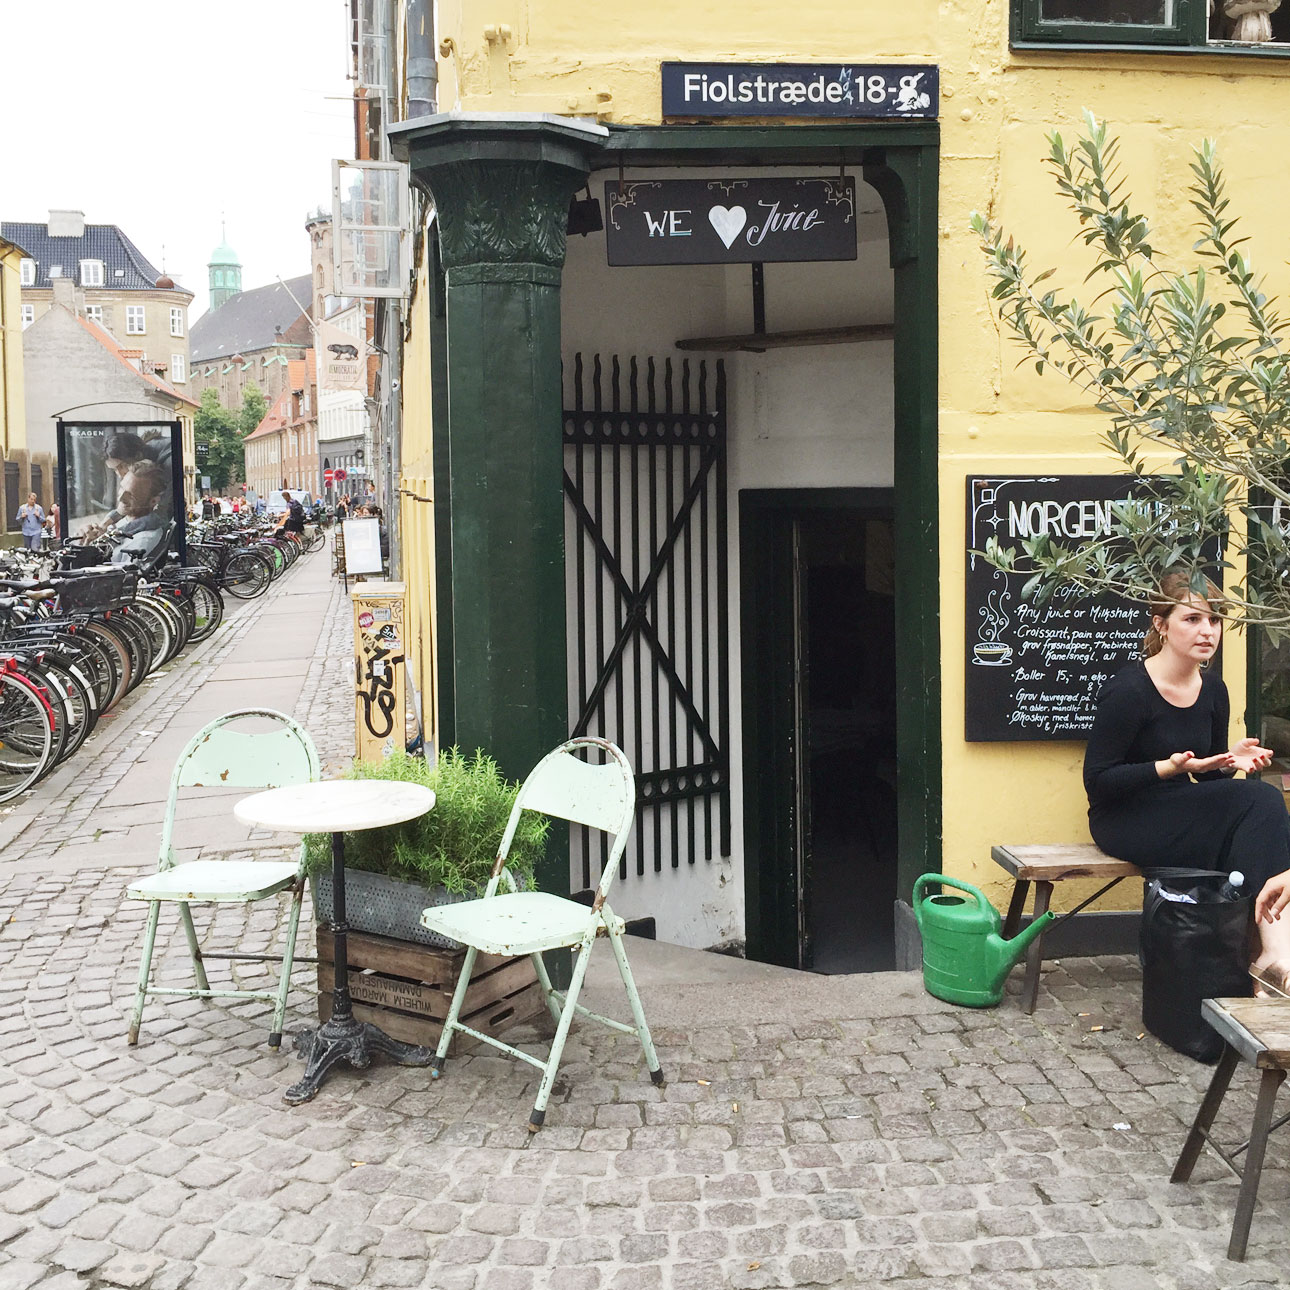 Kopenhagen hotspots big apple juice bar